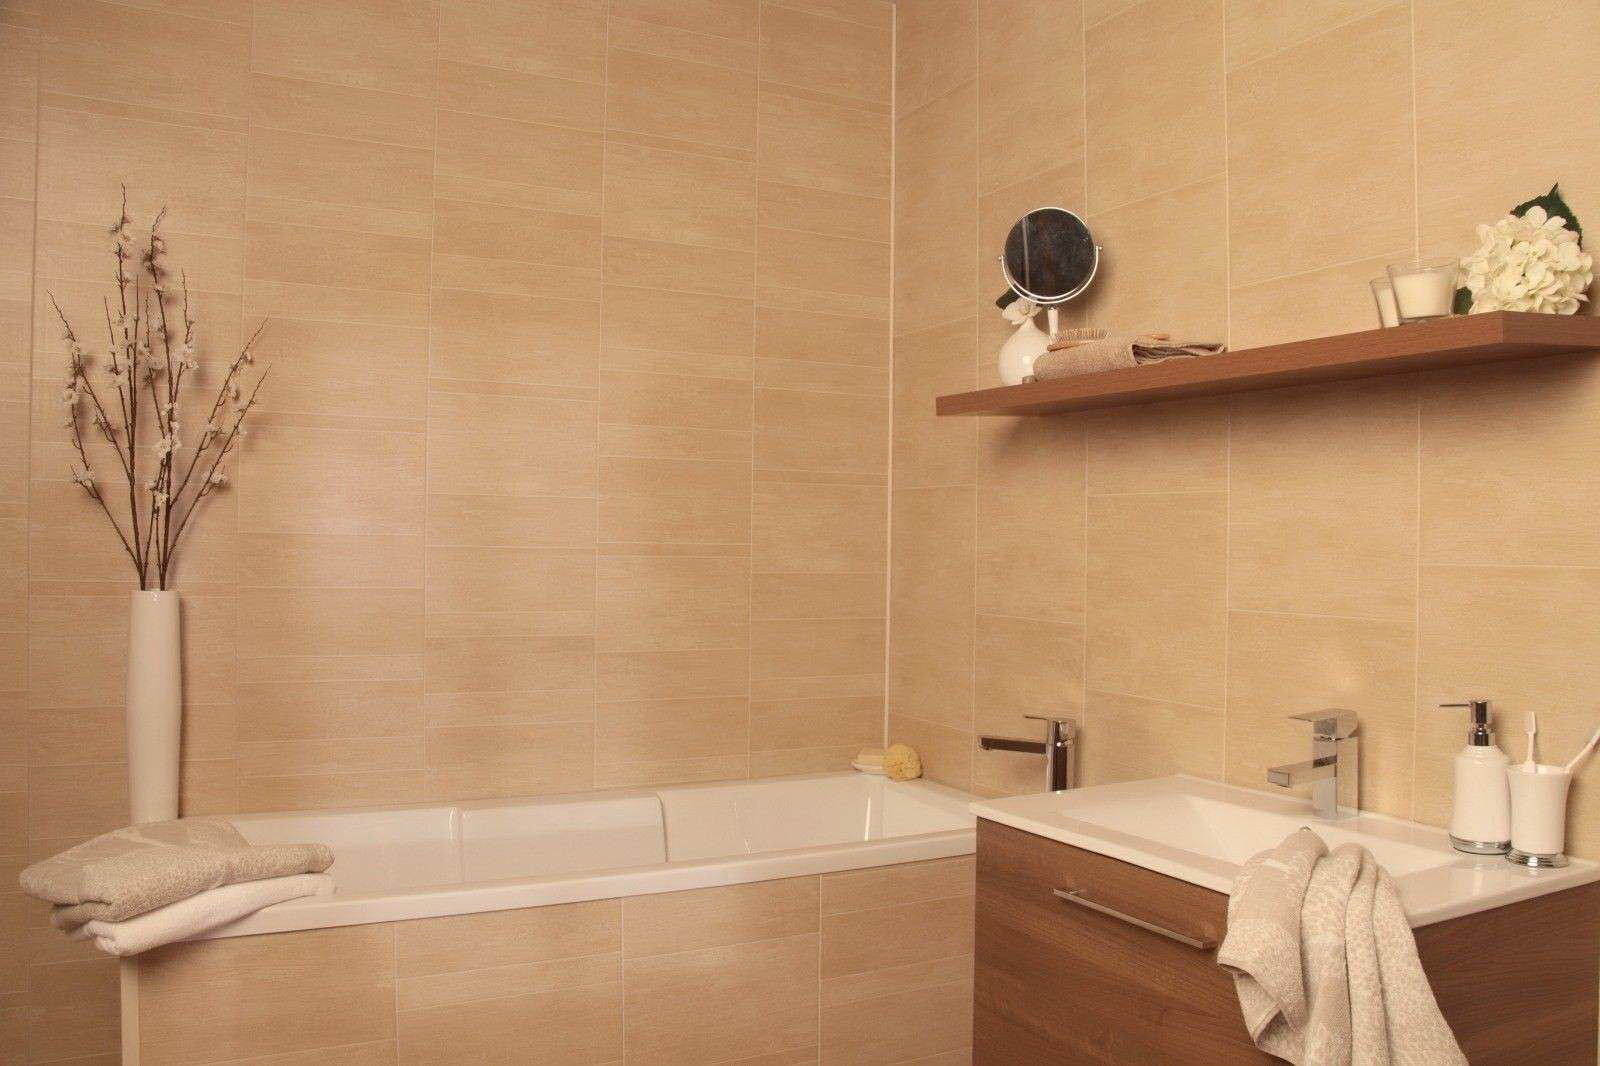 Ванная комната отделка стен панелями. Отделочные панели для ванной комнаты. Ванная отделанная панелями. Стеновые панели для ванной комнаты. Настенные панели для ванной.